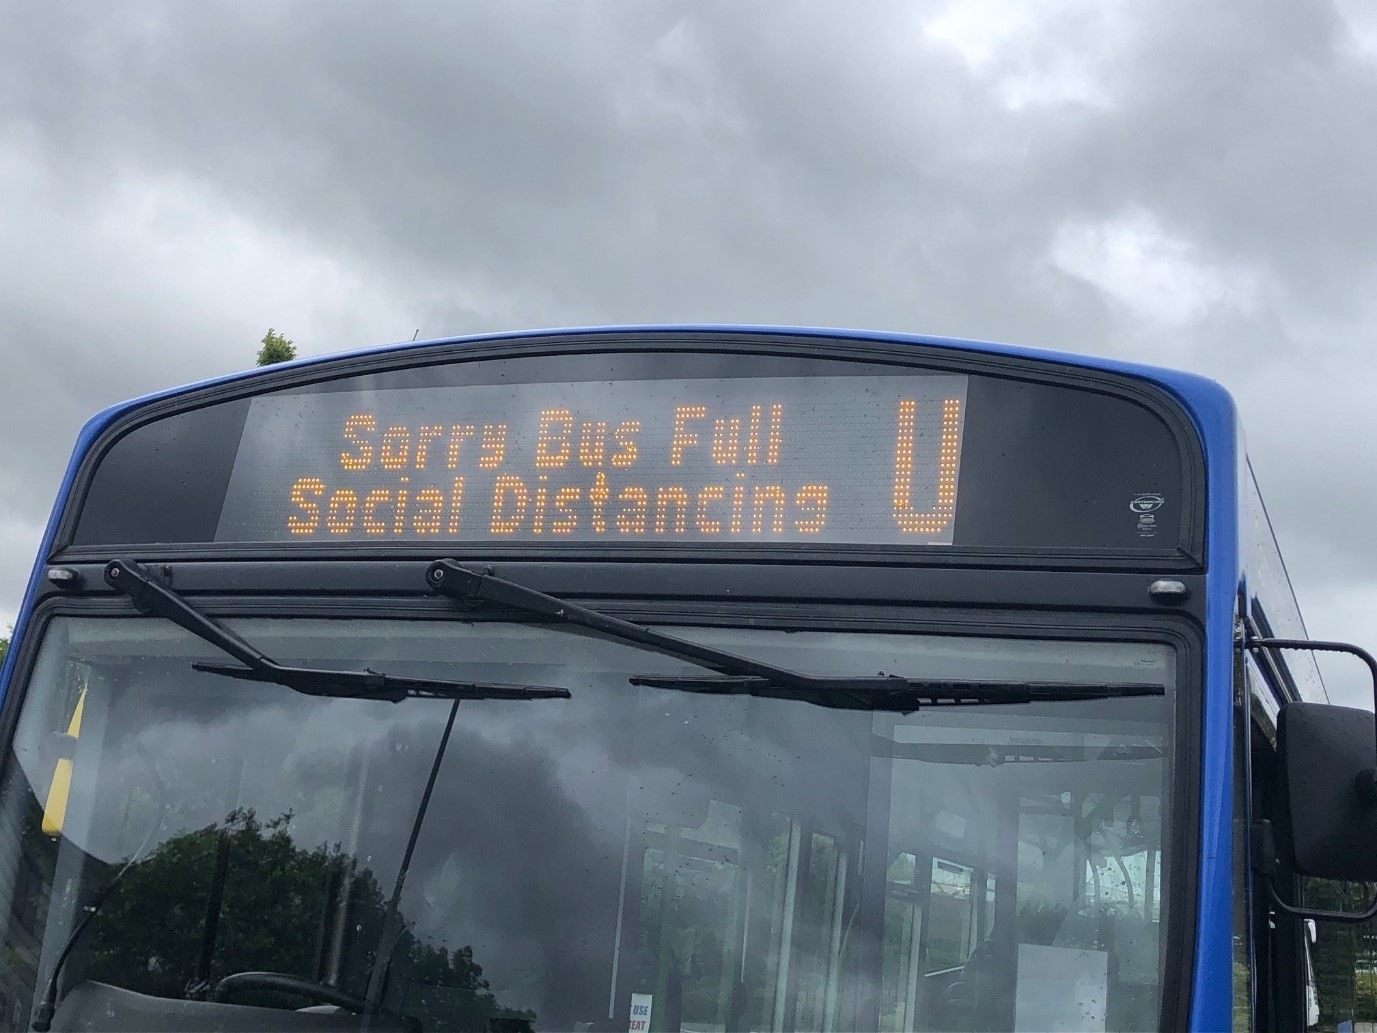 Bus full - social distancing